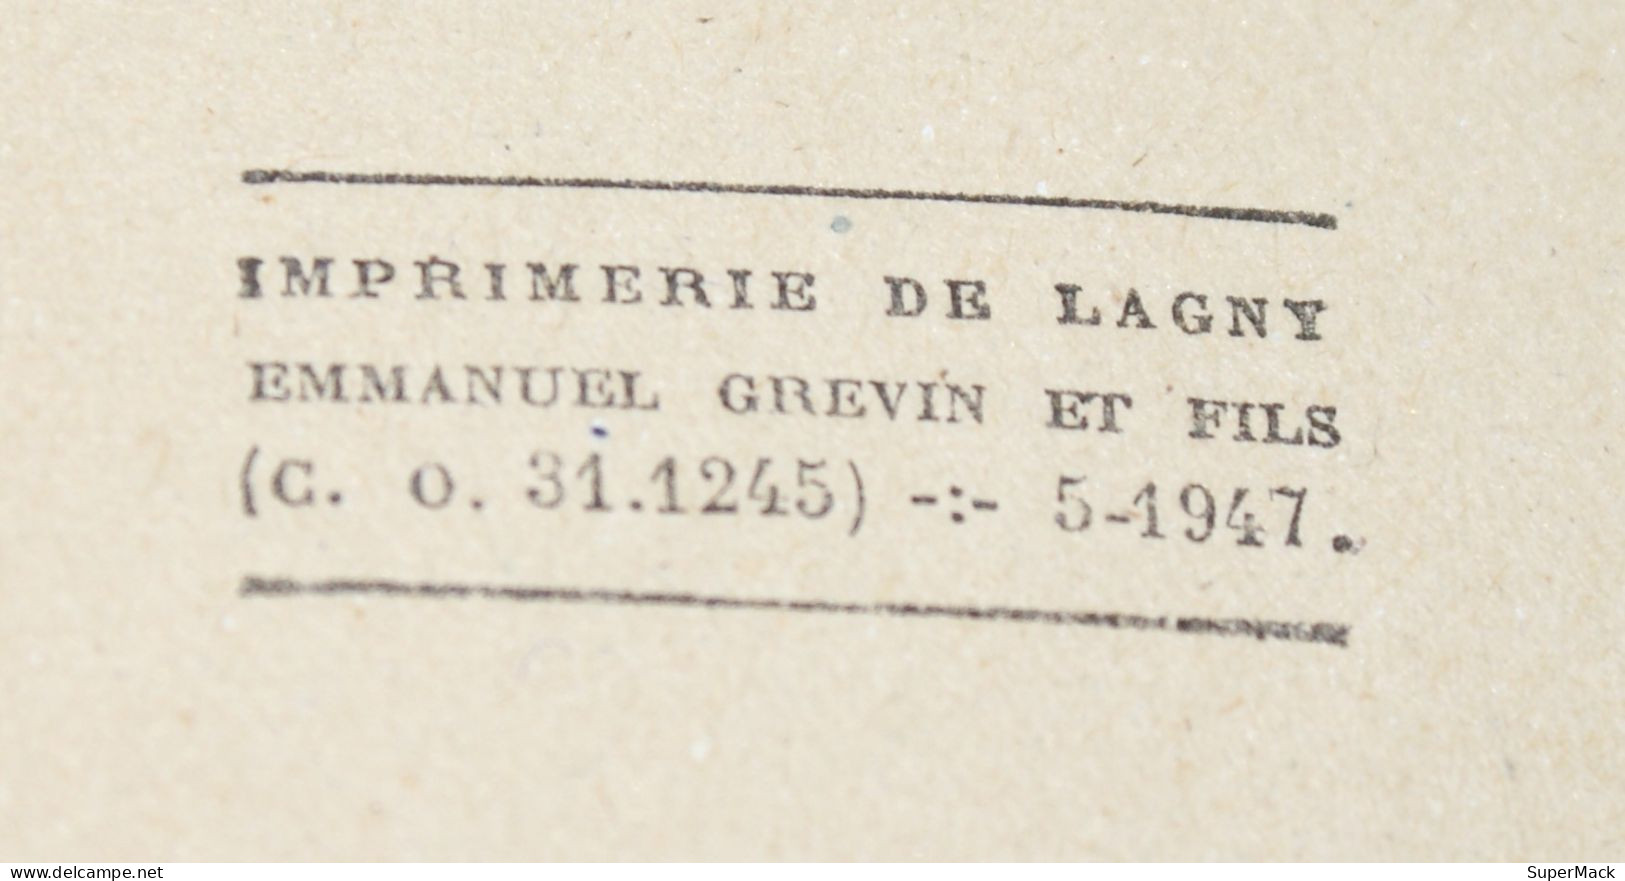 François Porché - Baudelaire Histoire d'une âme - Éditions Flammarion - 452p - EO 1944